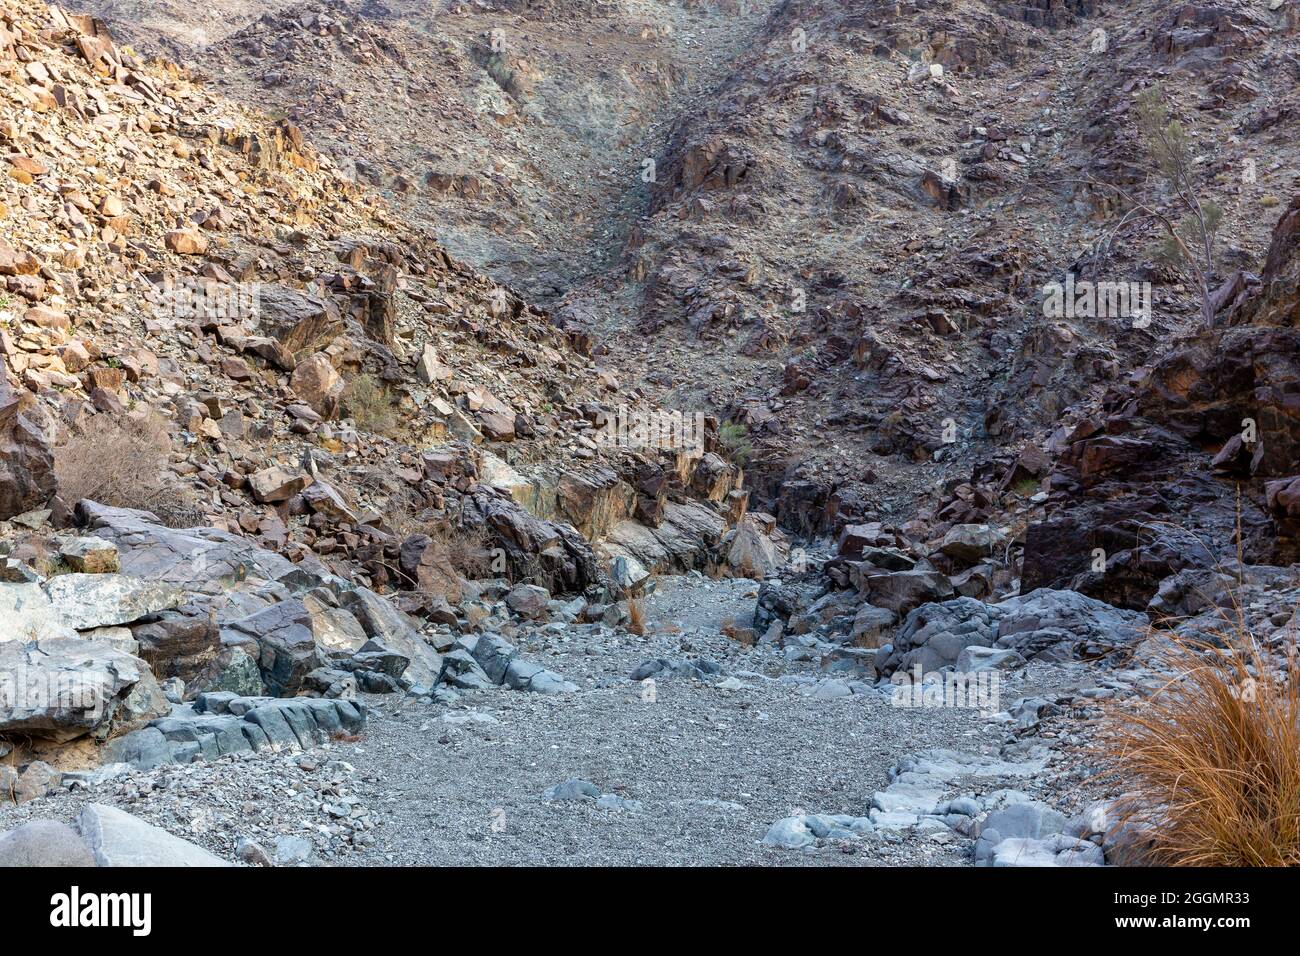 Stony, lecho seco del río (wadi) con restos de mineral crudo de cobre, piedras verdes y rocas, ruta de senderismo de cobre, Hatta, Hajar Mountains, EAU. Foto de stock